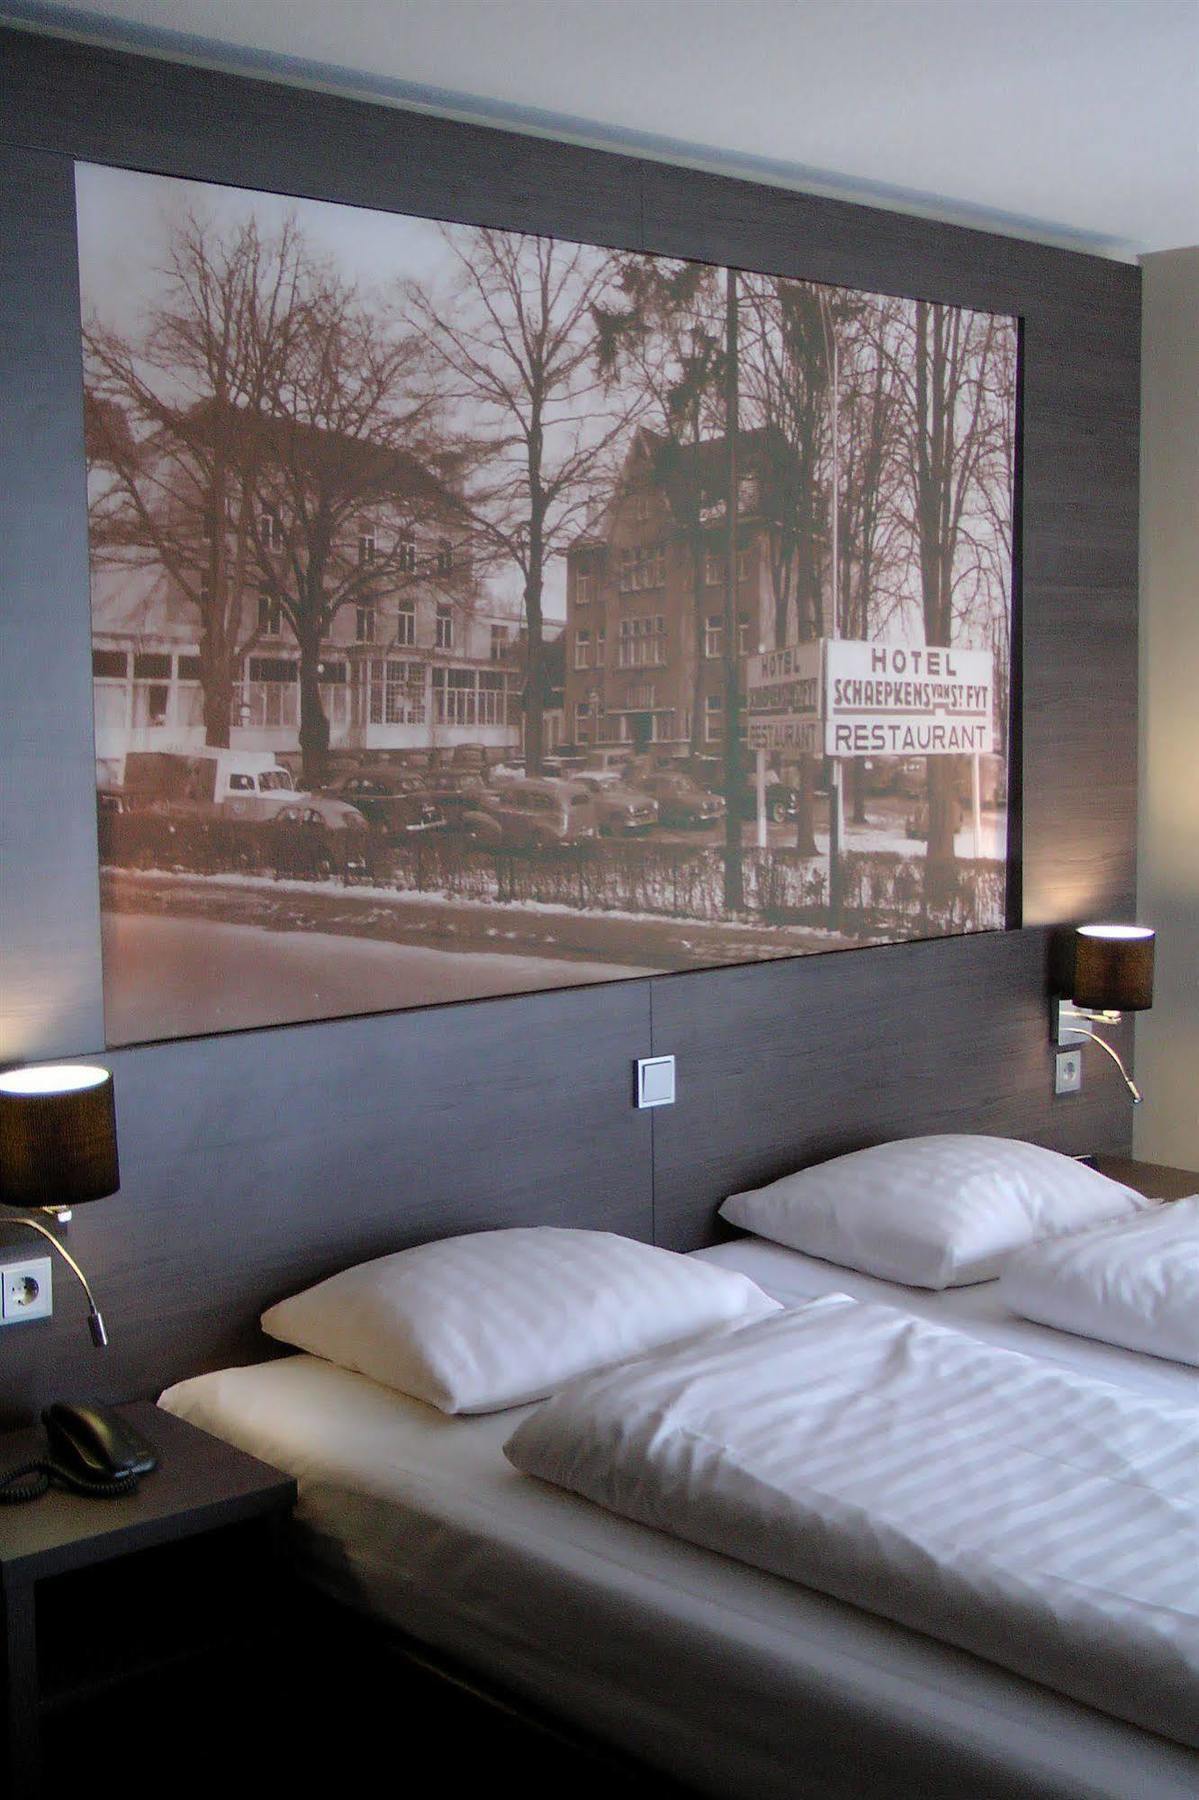 Hotel Schaepkens Van St Fijt Valkenburg aan de Geul 외부 사진